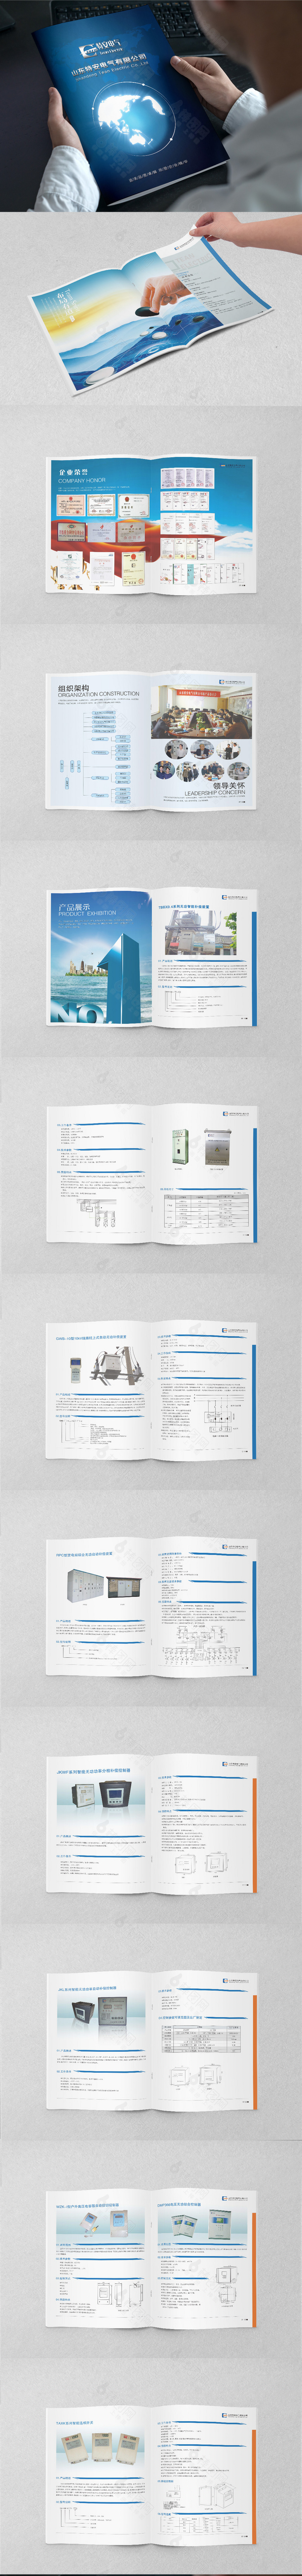 仪器仪表企业画册